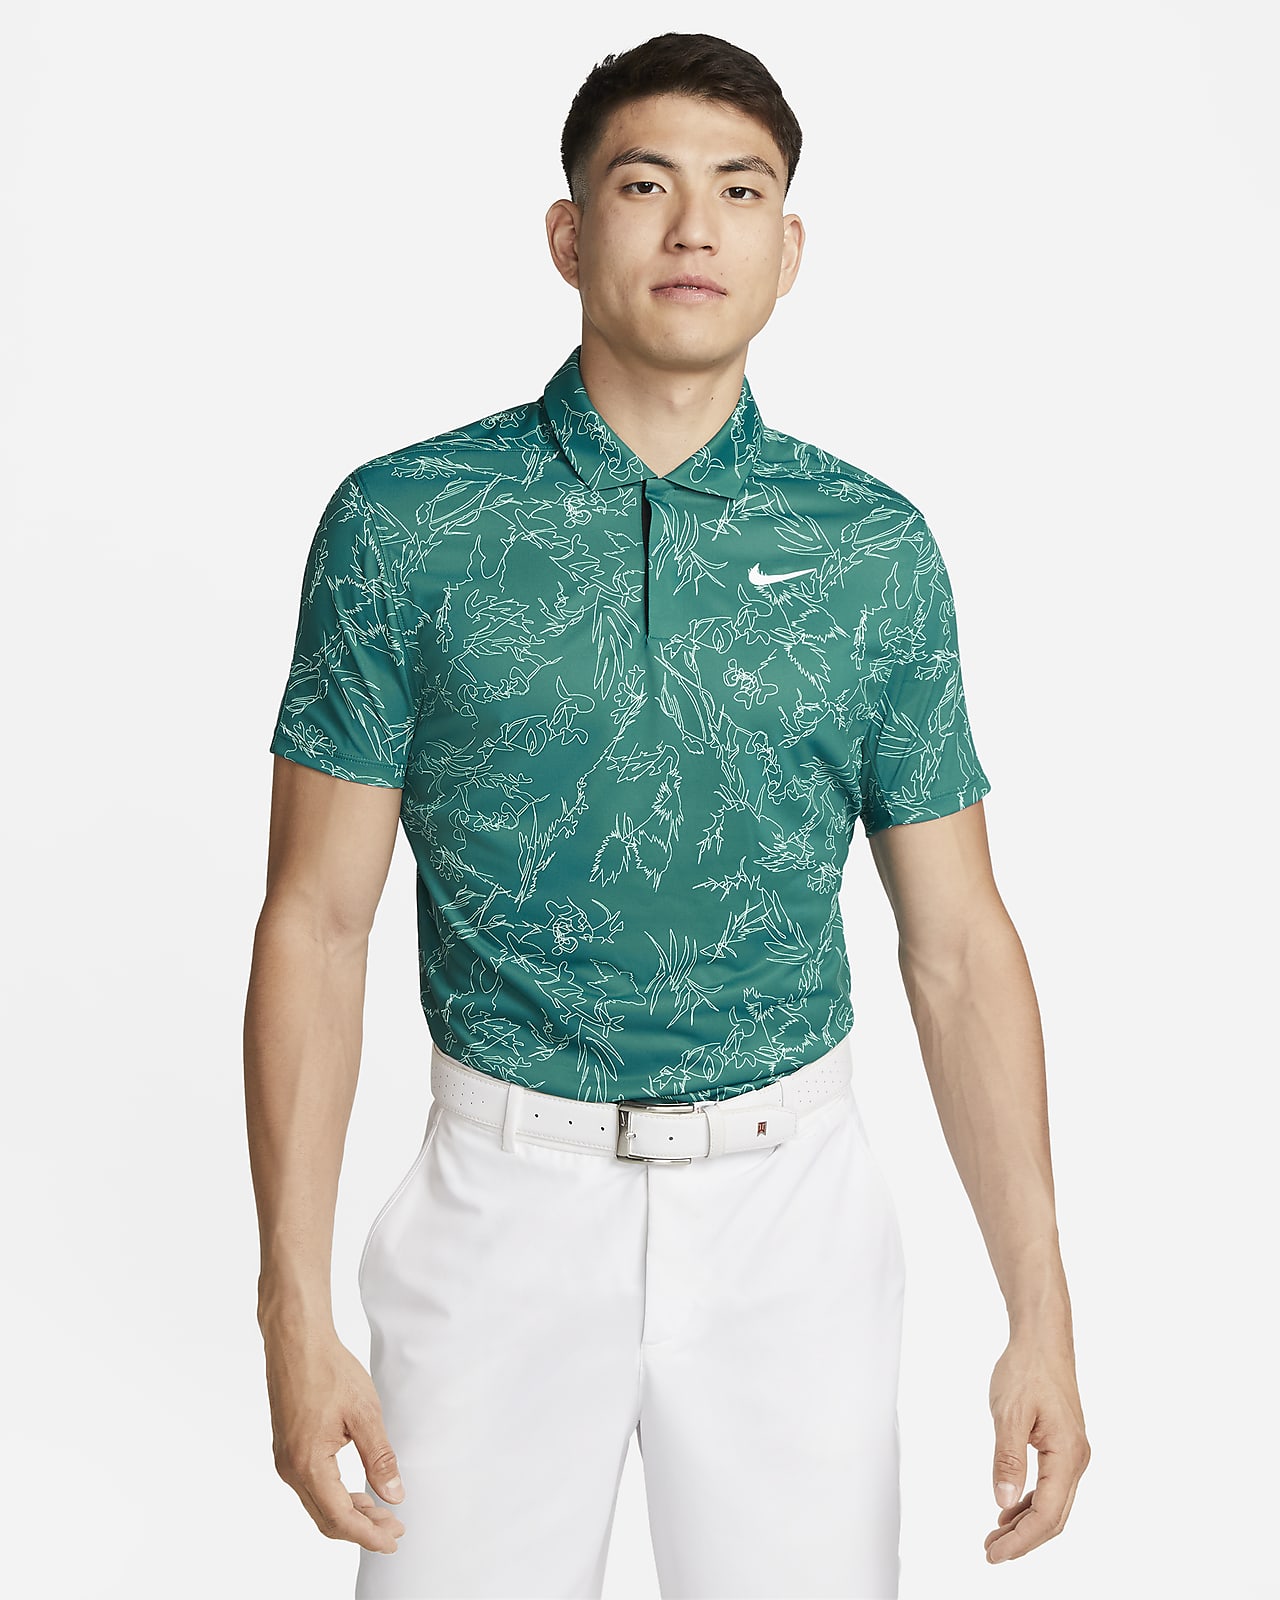 Tiger Woods 男款 Nike Dri-FIT ADV 高爾夫球衫